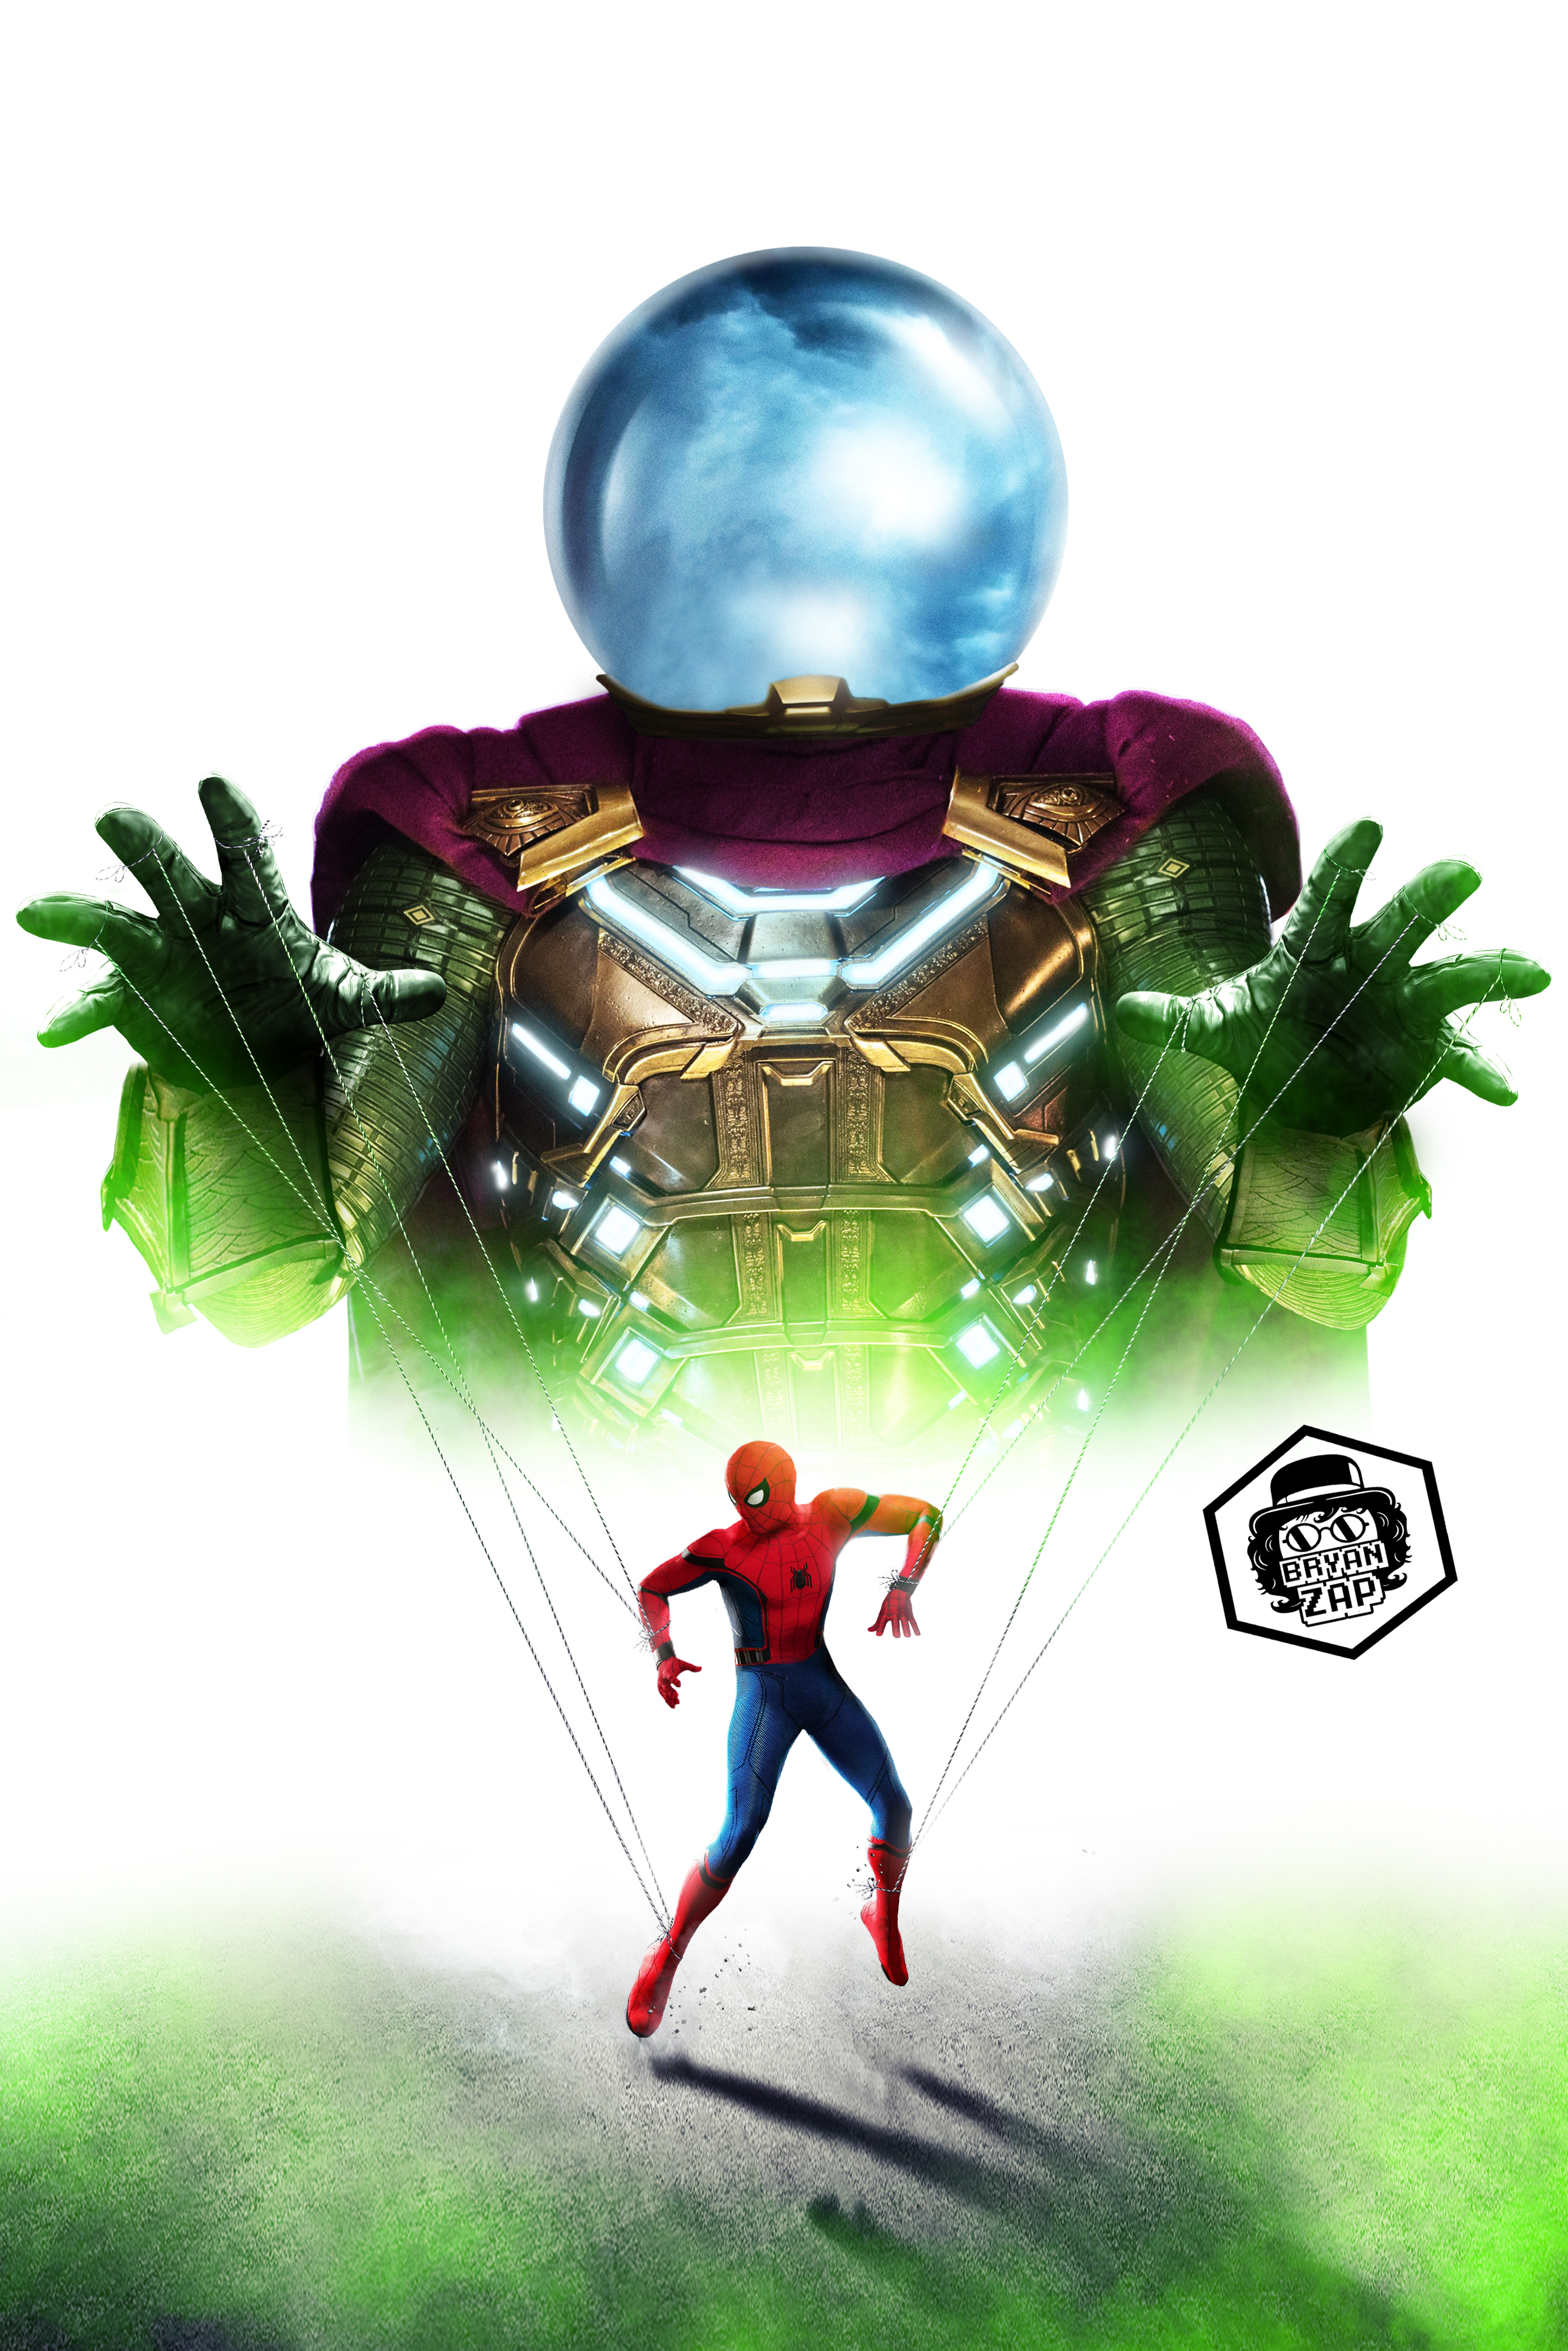 Mysterio Spider-Man Poster by Bryanzap on DeviantArt